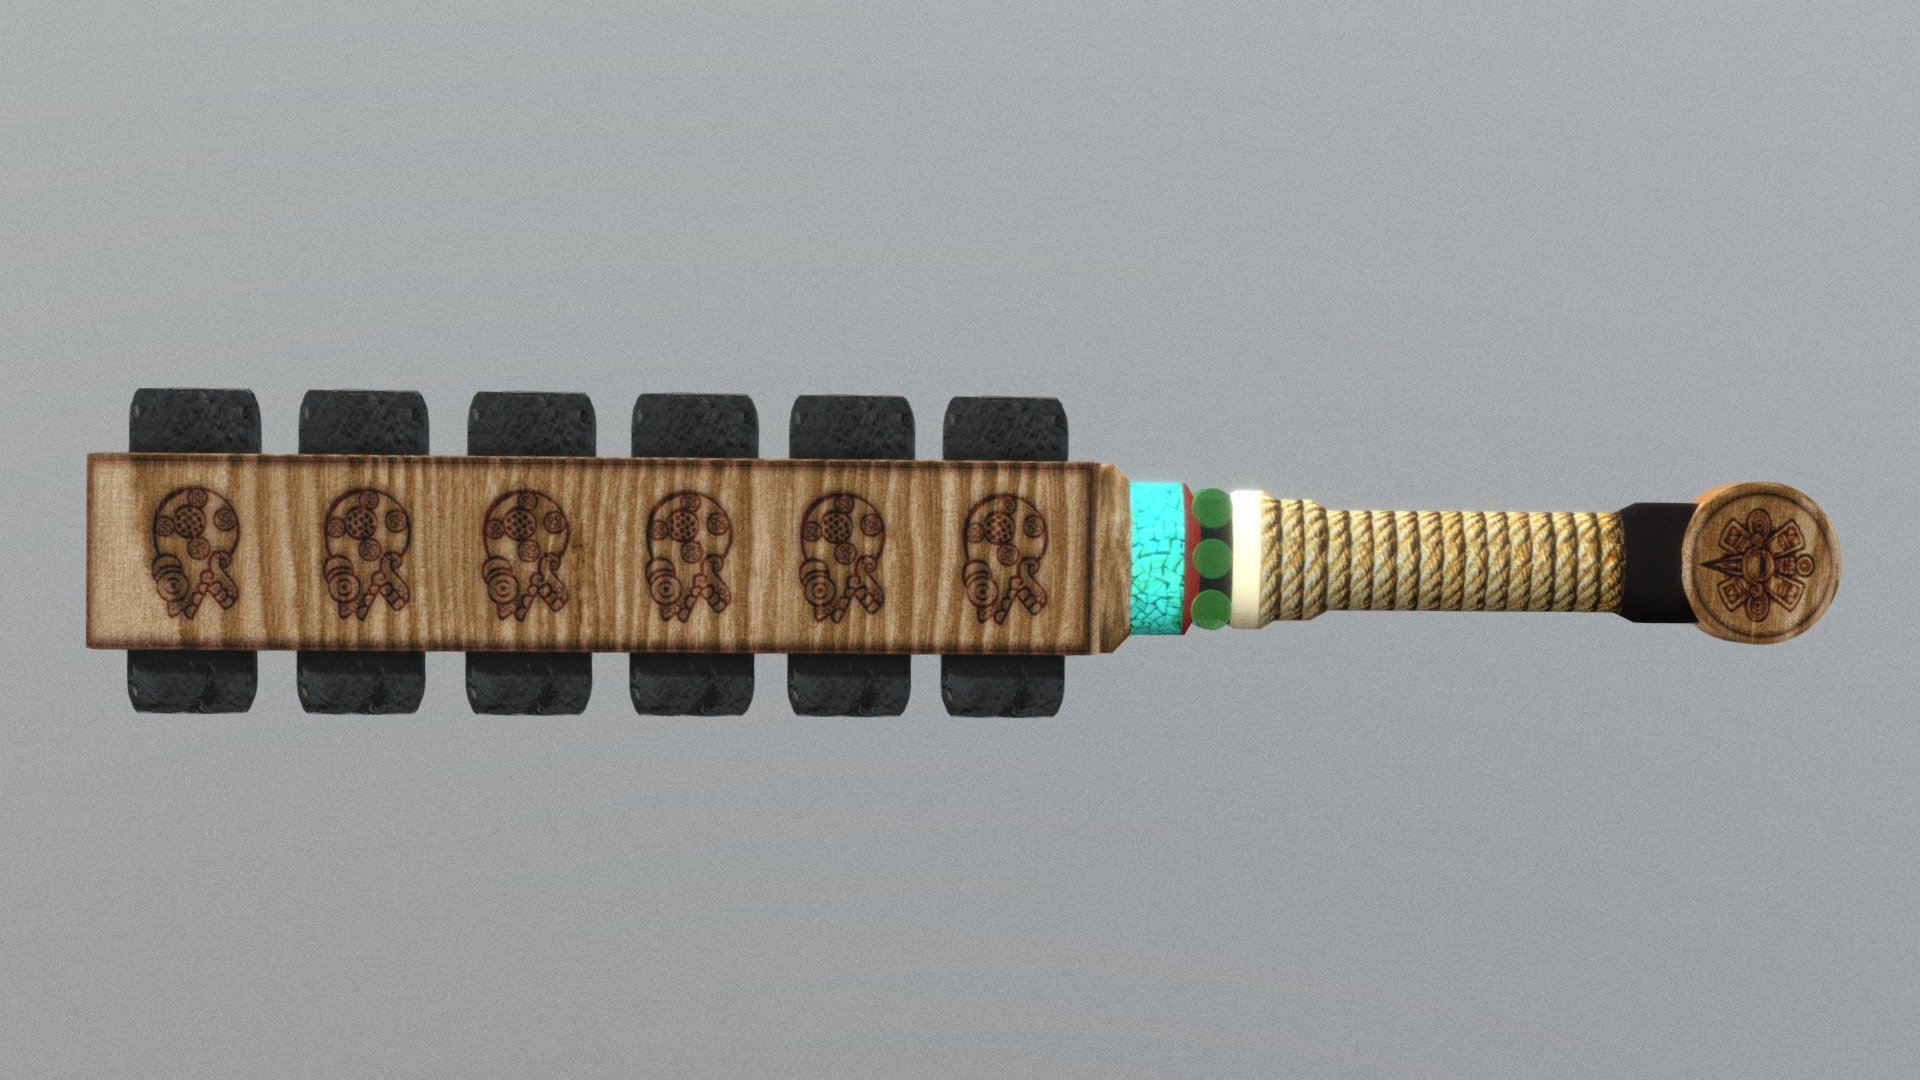 Macuahuitl "Aztec Sword" Model